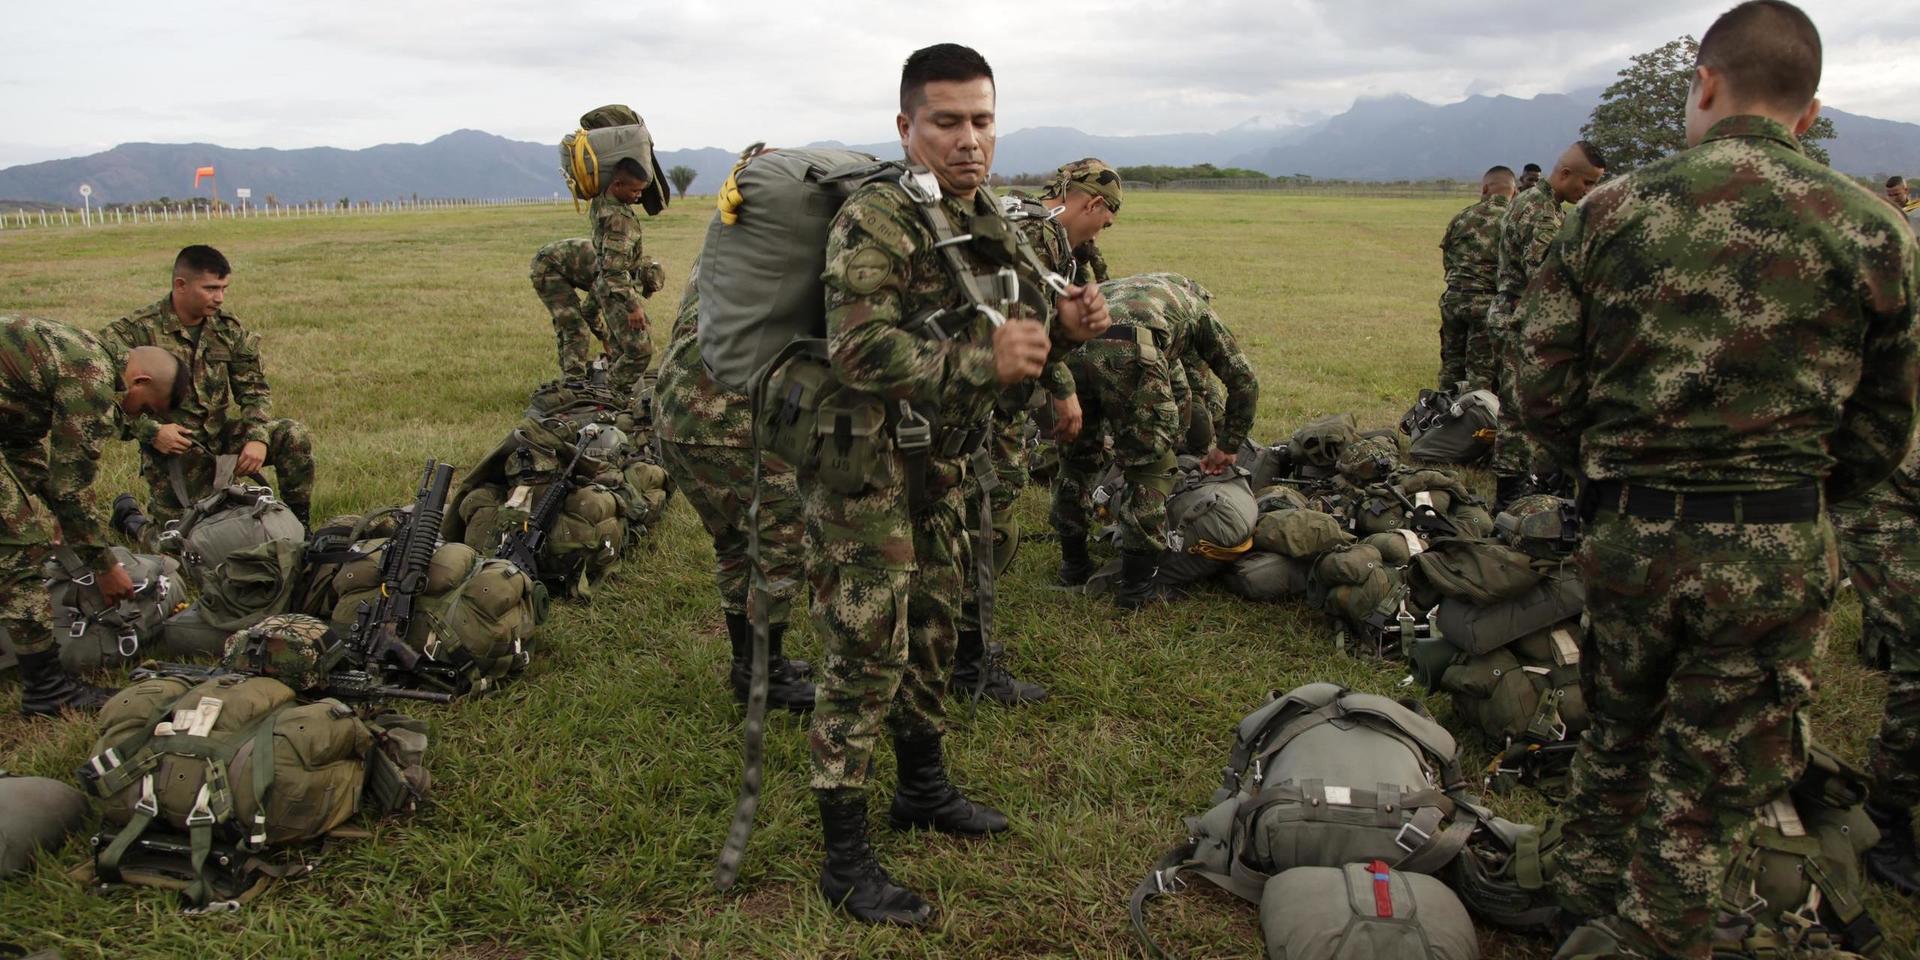 Colombianska fallskärmssoldater under en övning i det oroliga landet. Arkivbild.